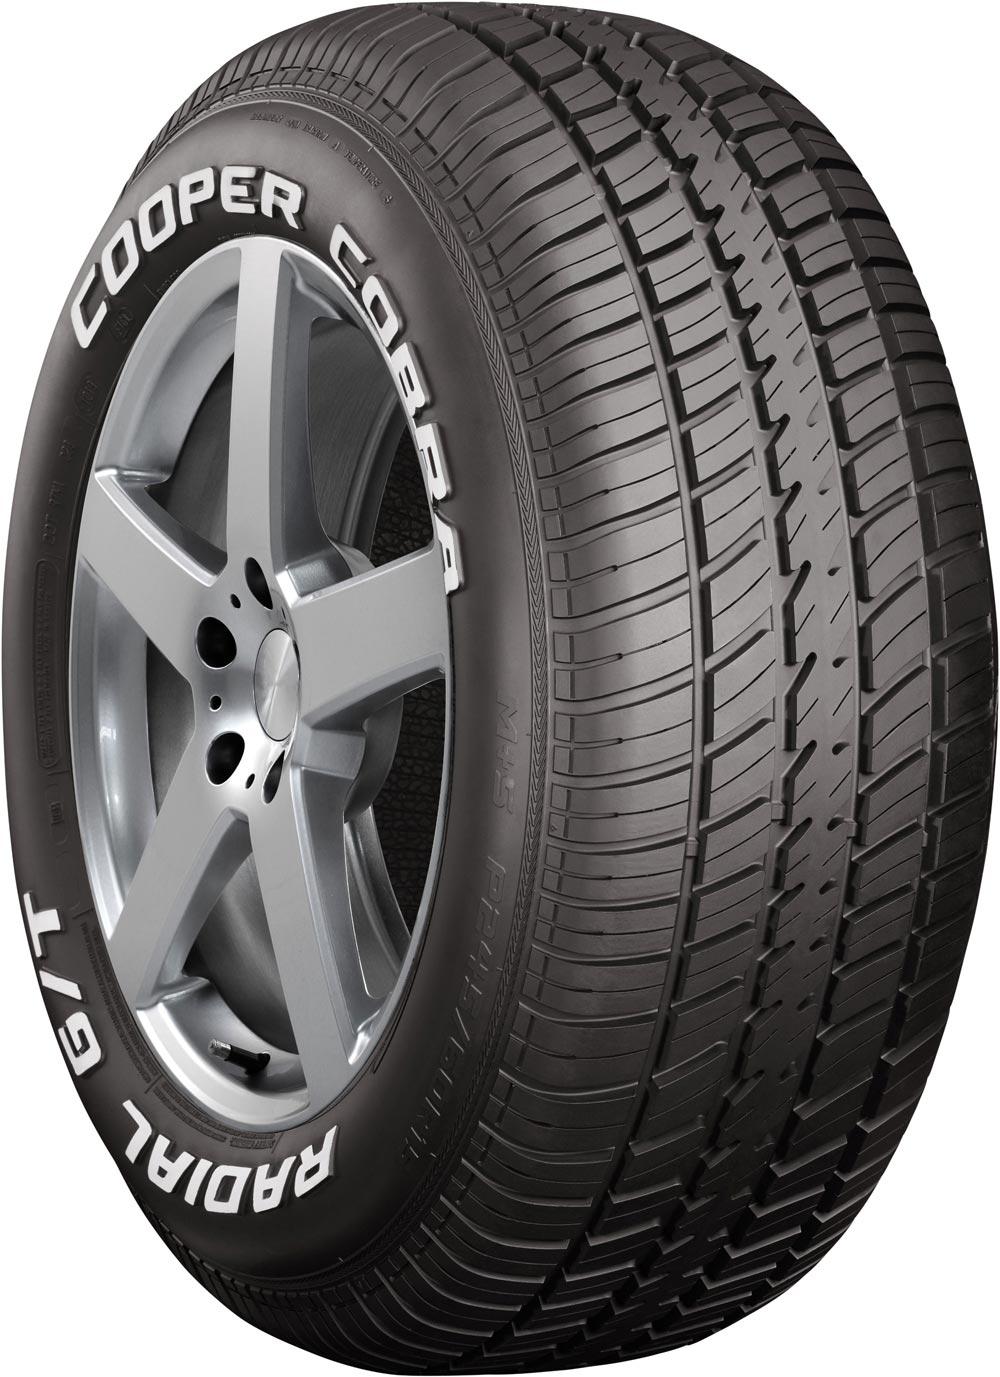 Автомобилни гуми COOPER COBRAGT 295/50 R15 105S